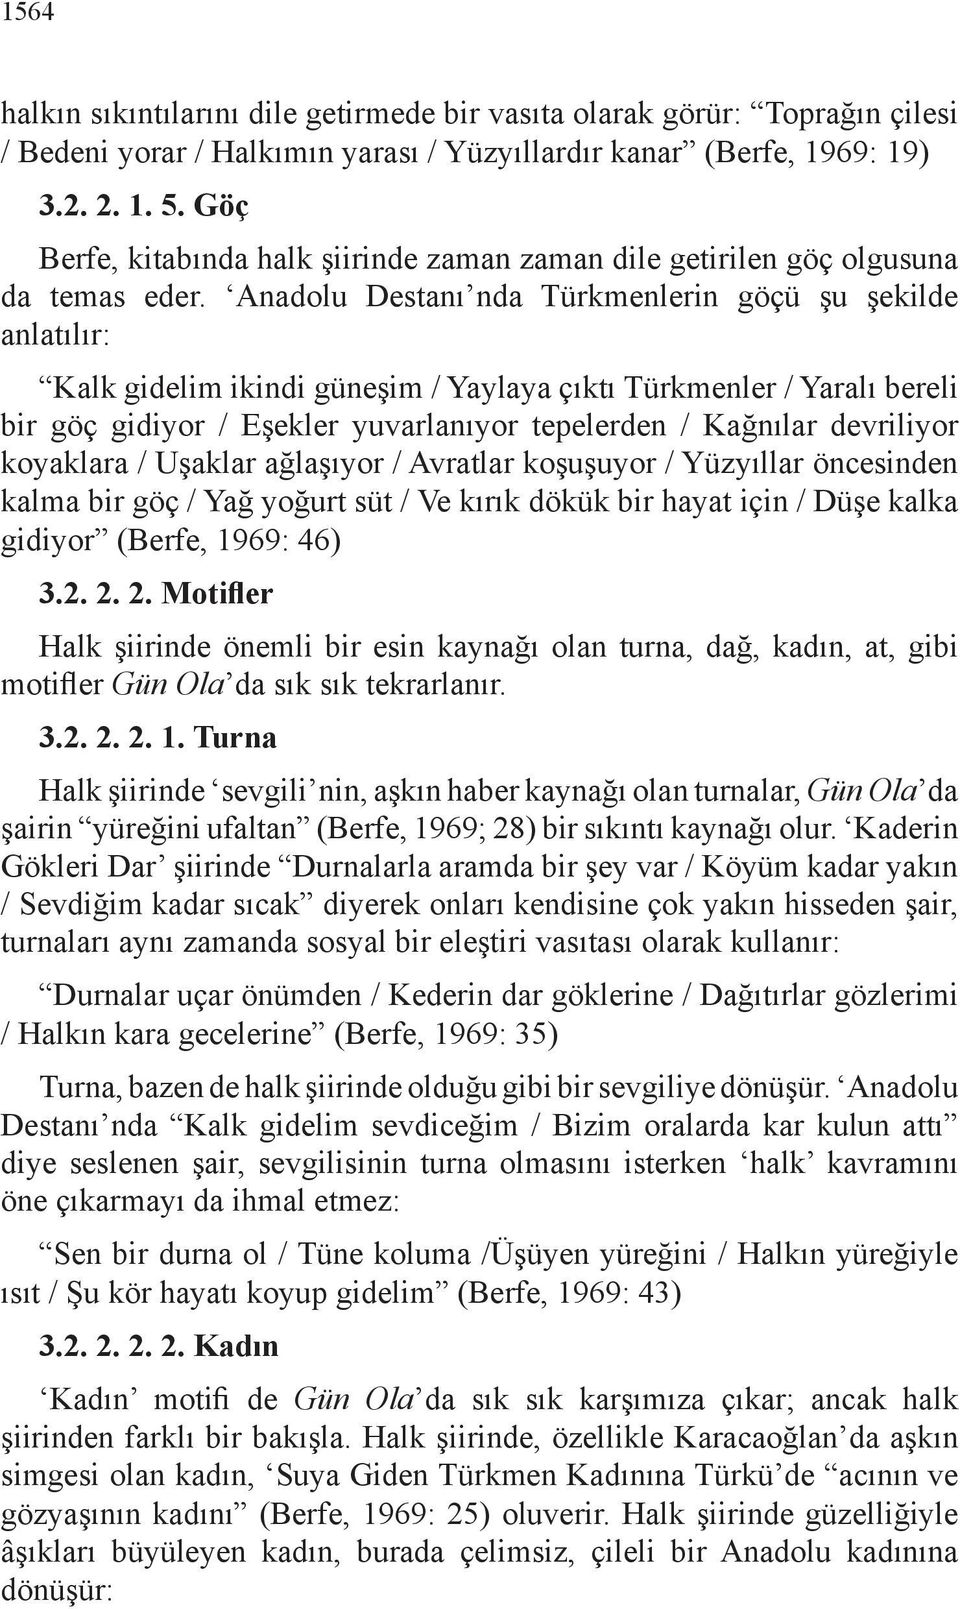 Anadolu Destanı nda Türkmenlerin göçü şu şekilde anlatılır: Kalk gidelim ikindi güneşim / Yaylaya çıktı Türkmenler / Yaralı bereli bir göç gidiyor / Eşekler yuvarlanıyor tepelerden / Kağnılar